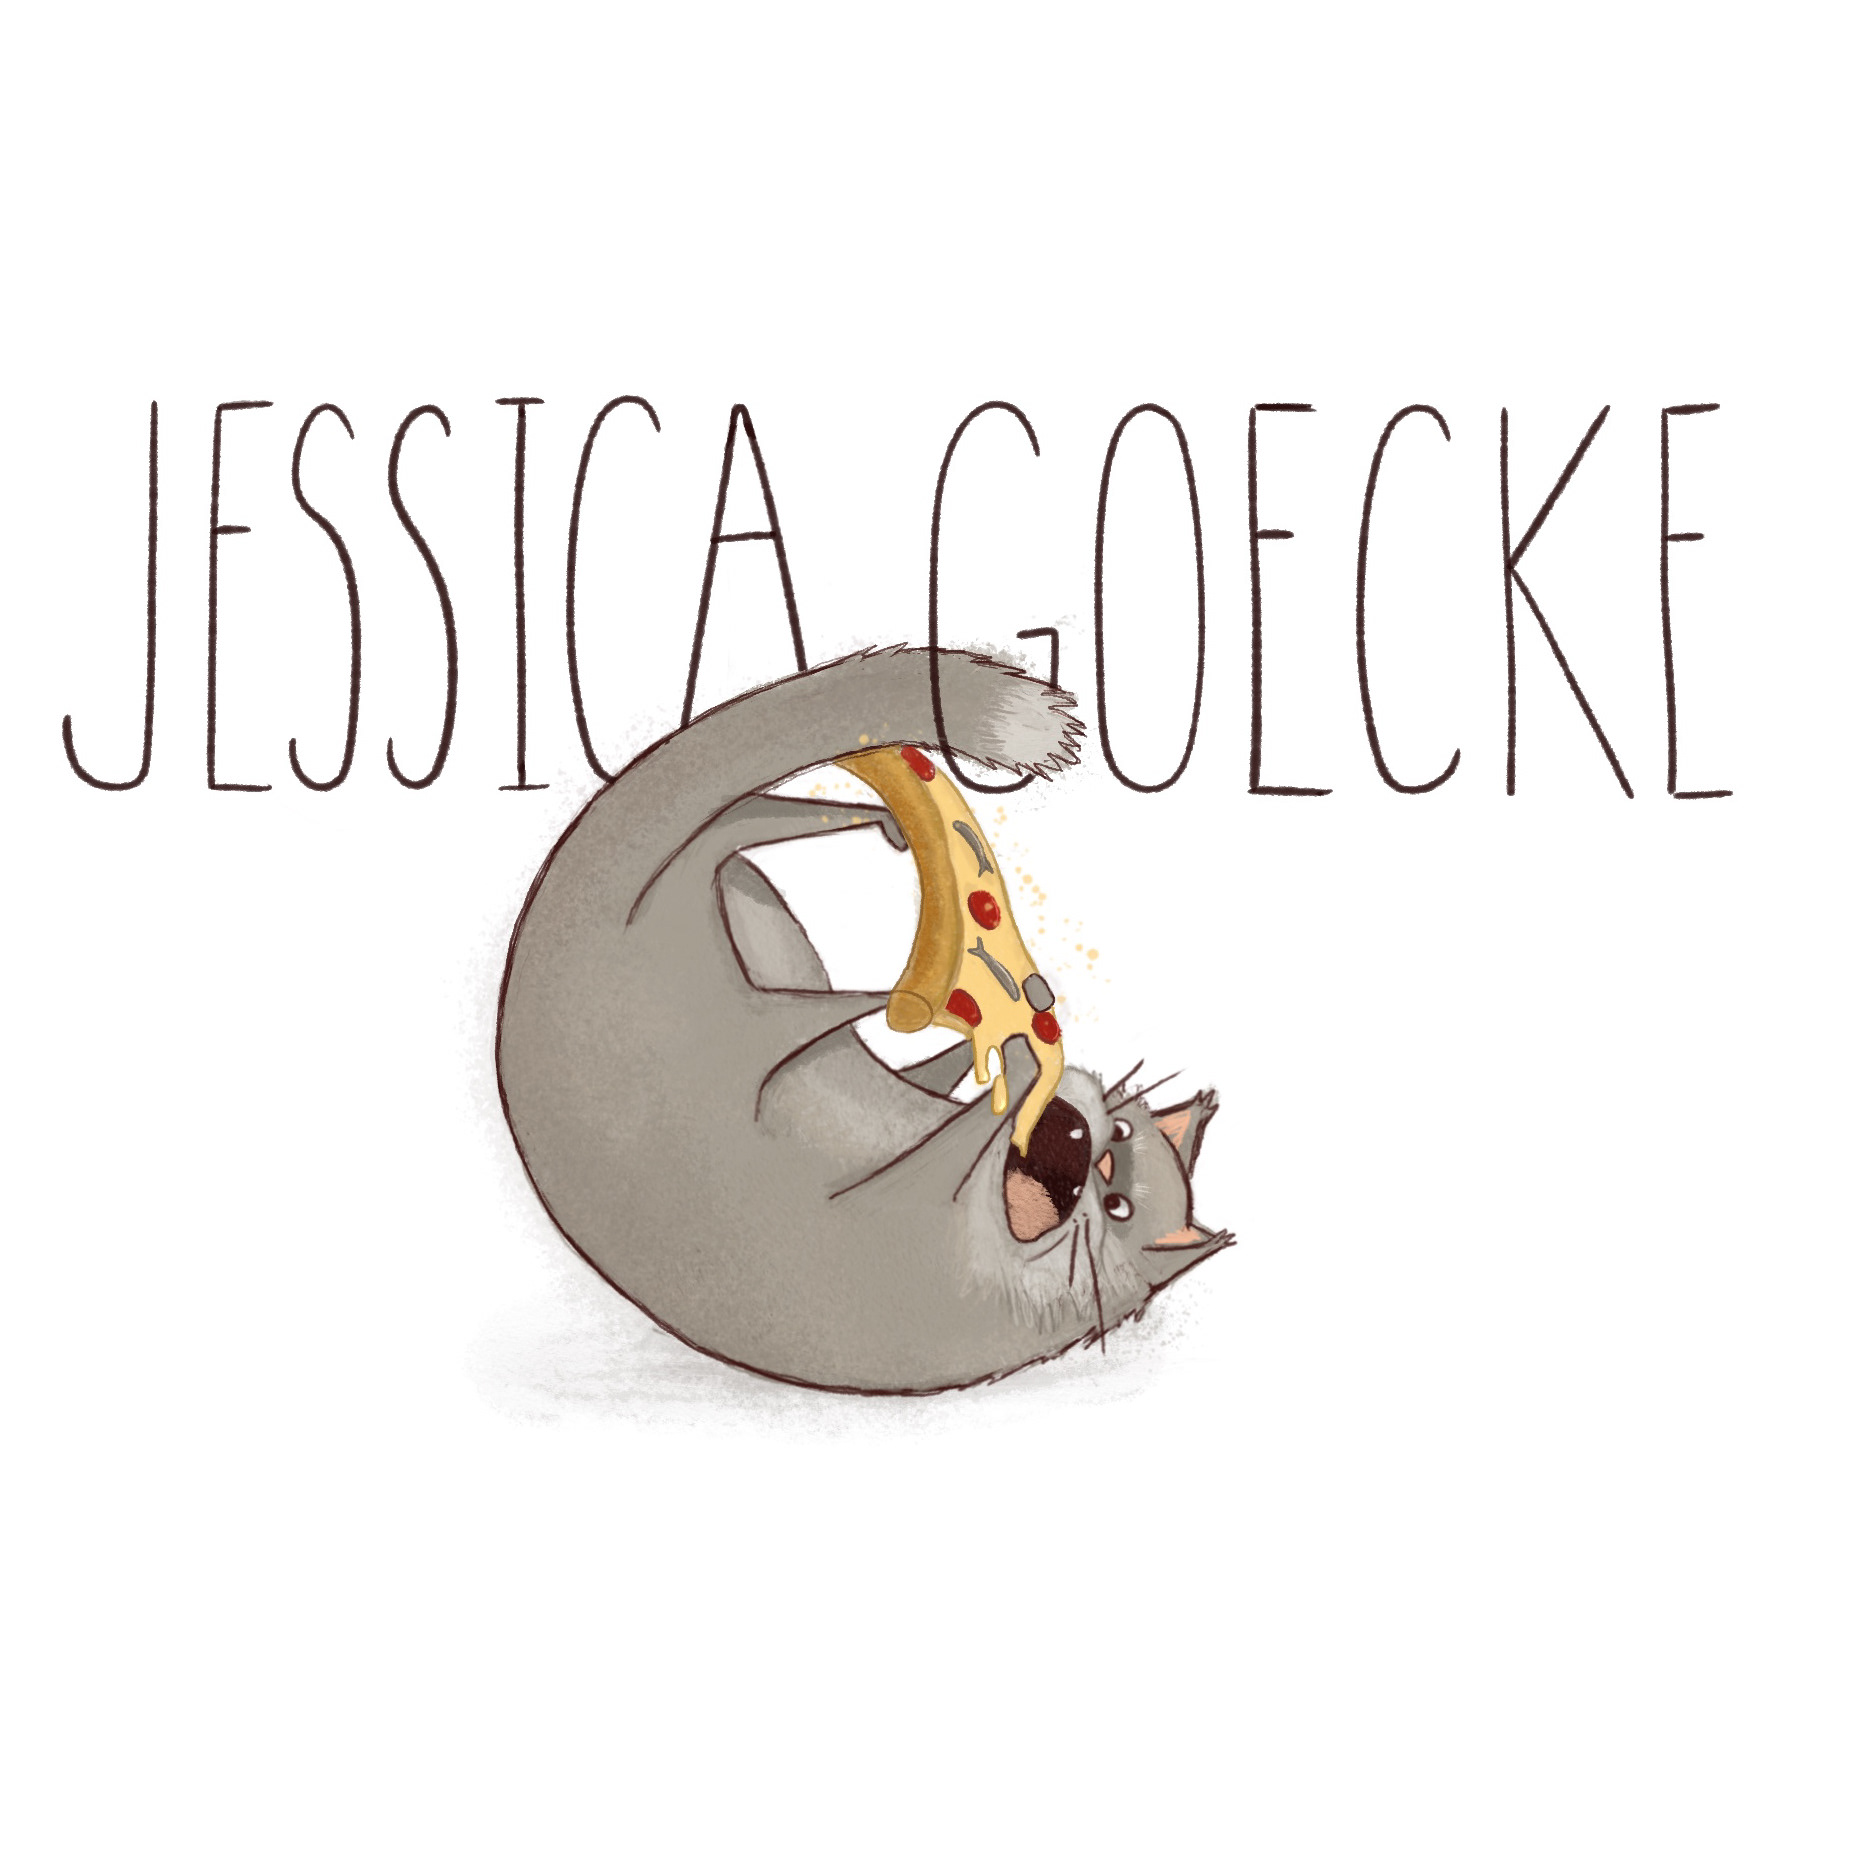 Jessica Goecke